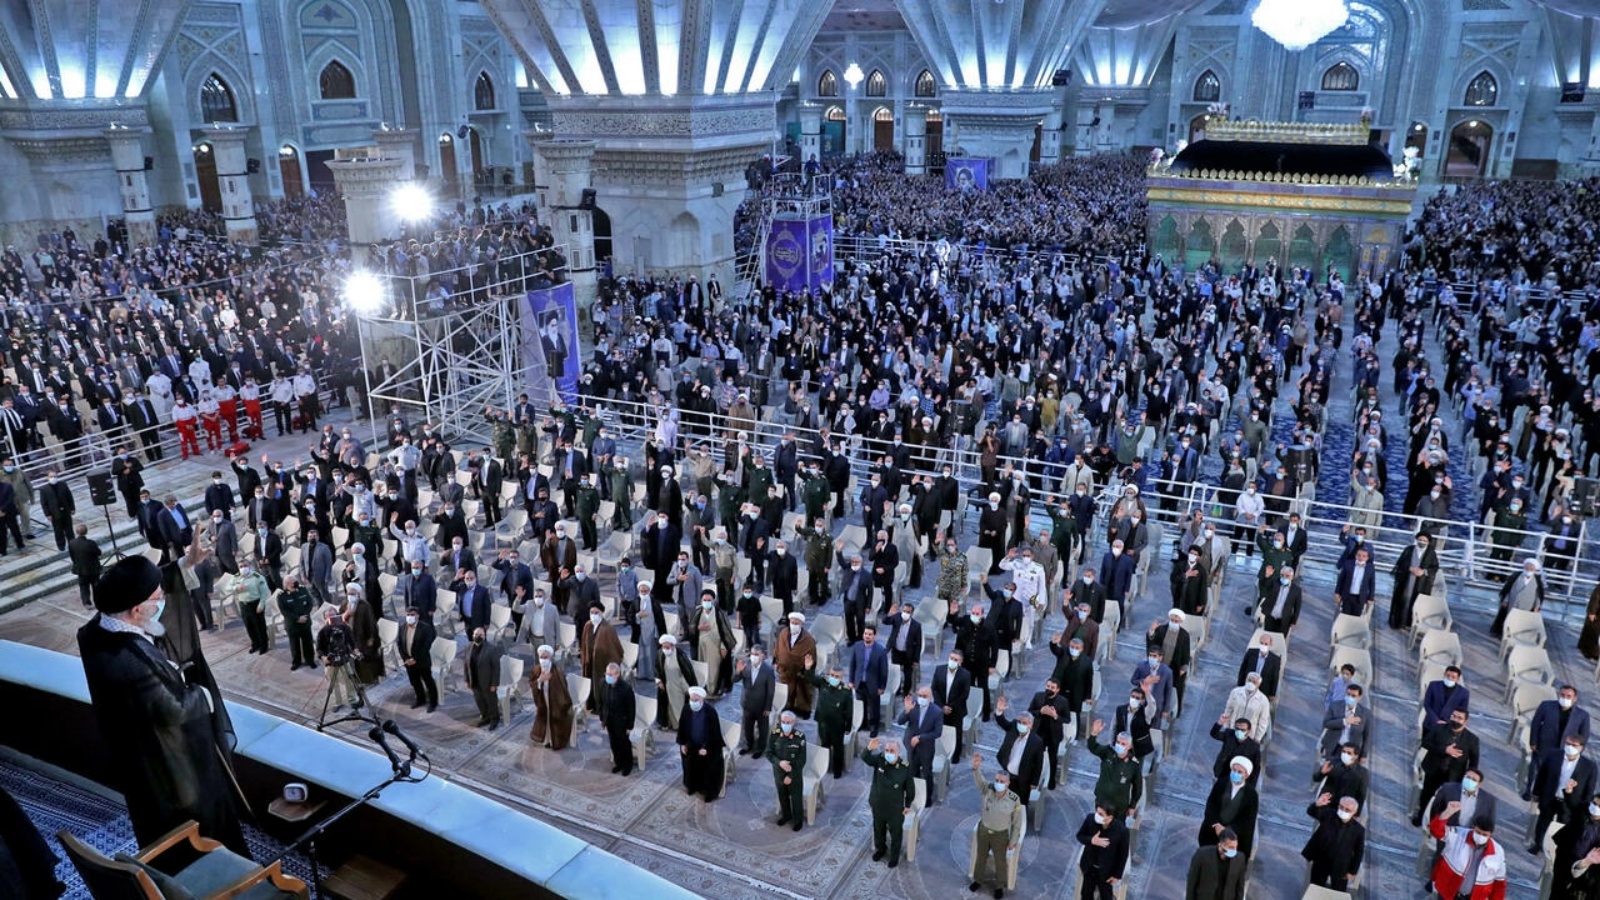 المرشد الأعلى للجمهورية الإسلامية آية الله علي خامنئي يحيي الحاضرين في مرقد الإمام الخميني في الرابع من يونيو 2022